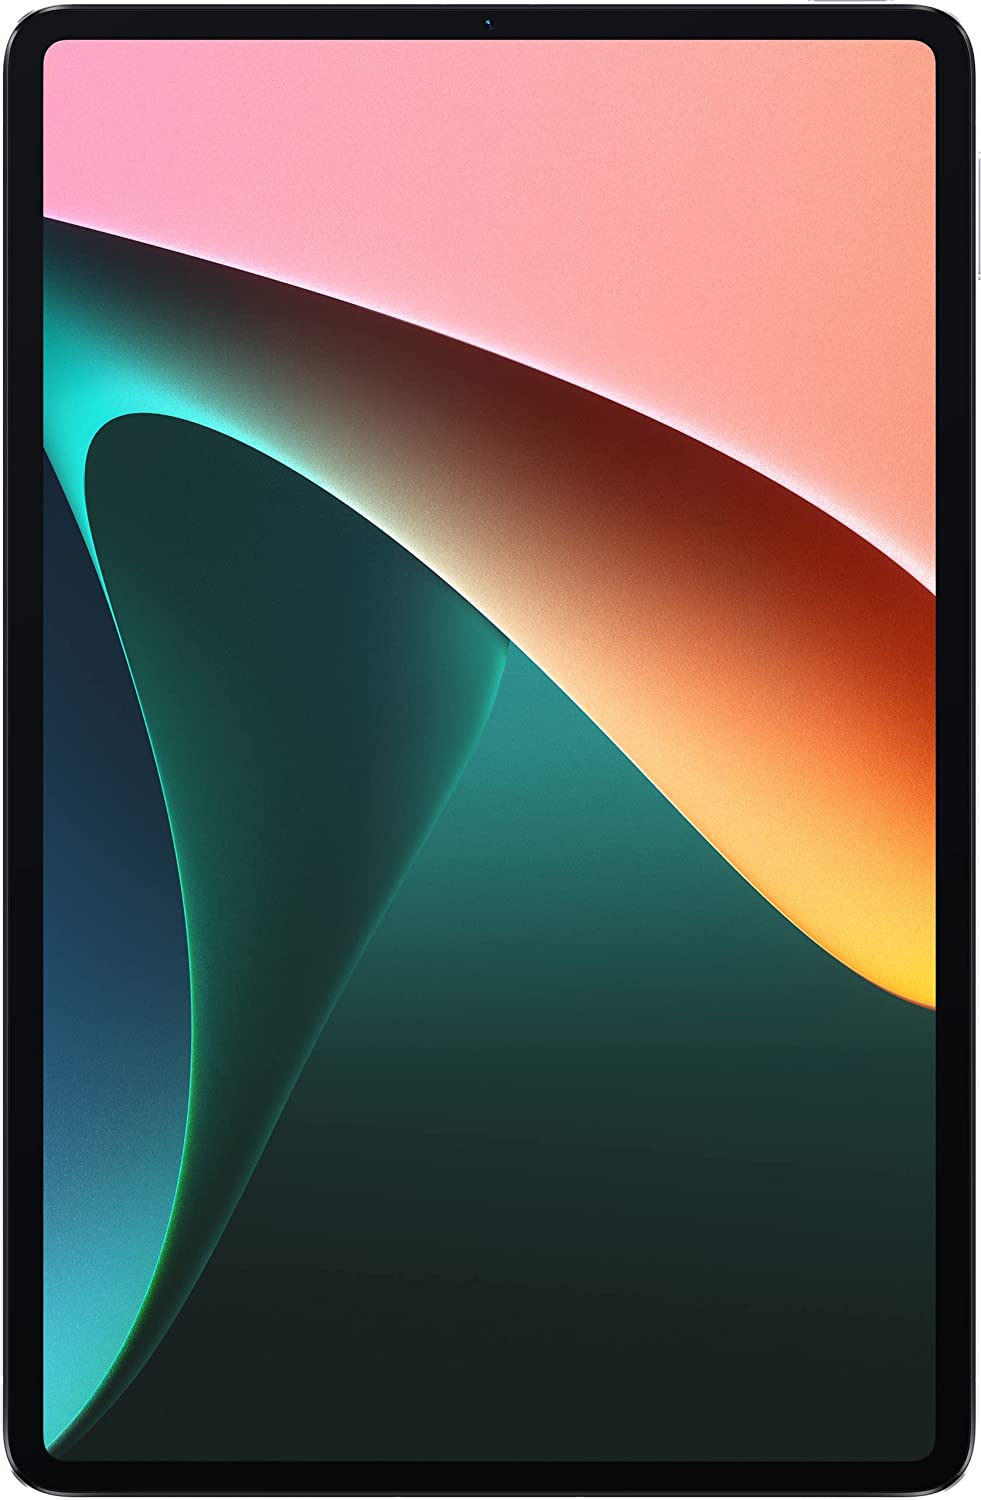 अमेजन ने iPad, Xiaomi और लेनोवो टैबलेट पर निकाली है बड़ी सस्ती डील, ऑफर में खरीदें 40% कम कीमत पर